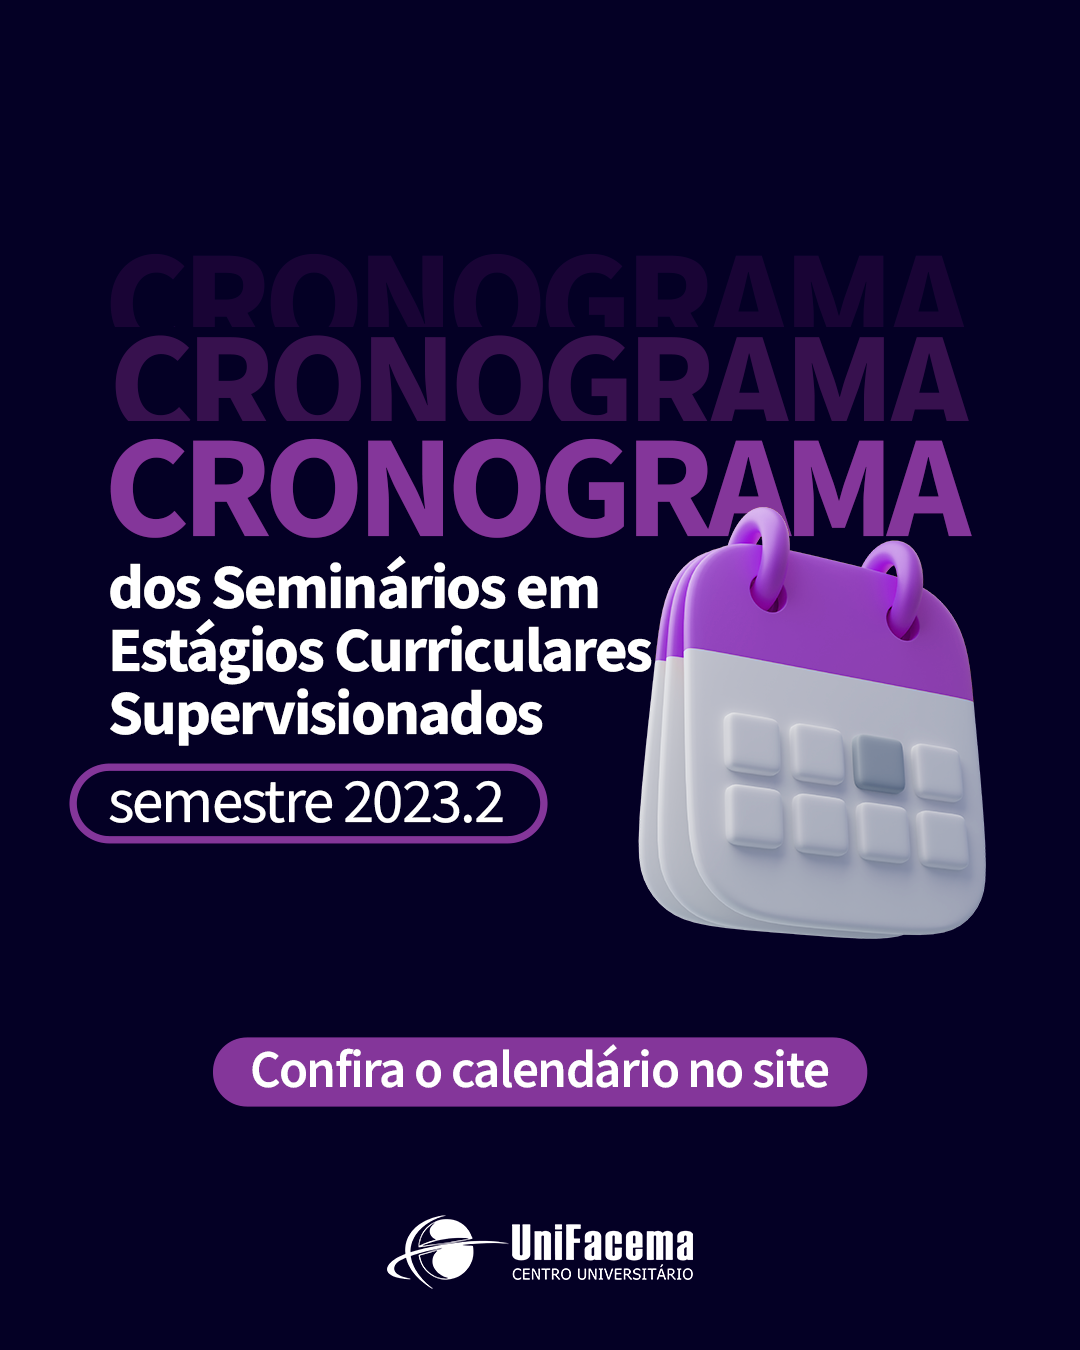 UniFacema realiza Seminários em Estágios Curriculares Supervisionados no semestre 2023.2